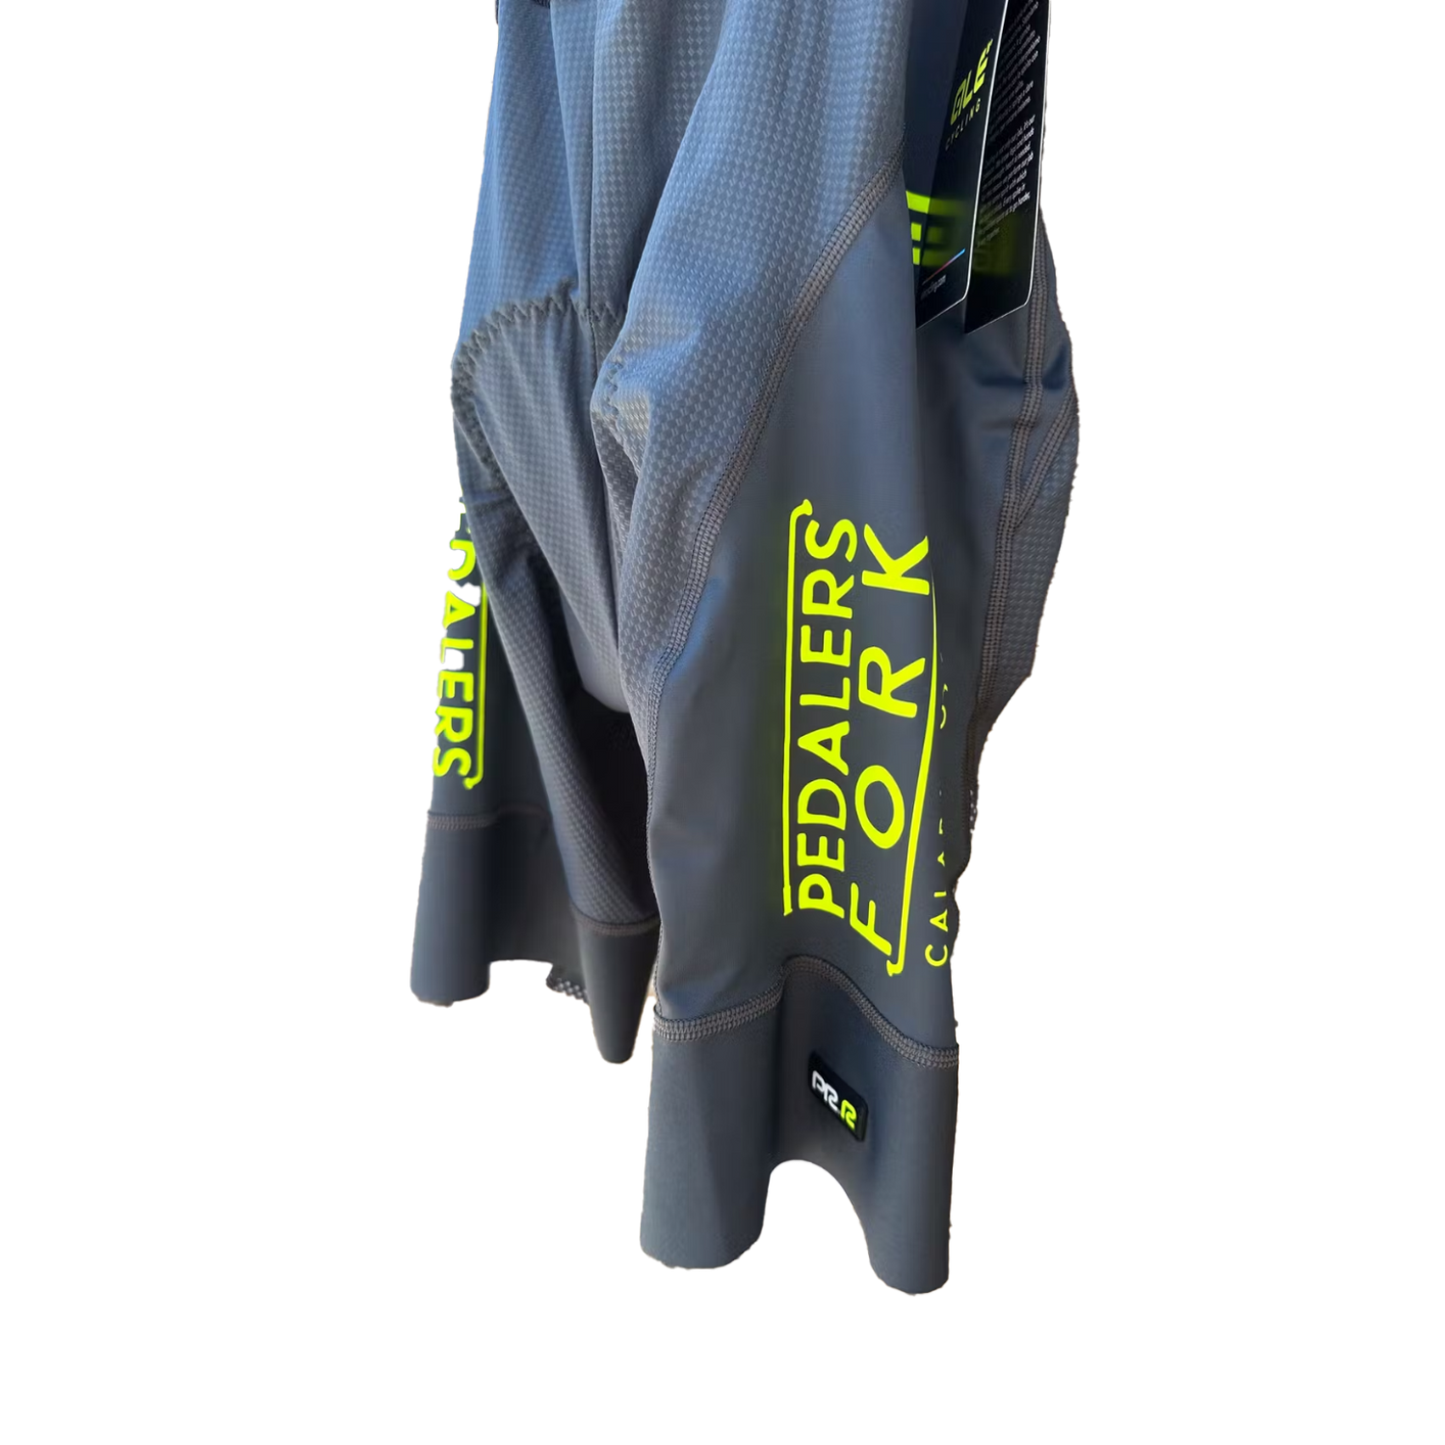 Grey biker shorts with Pedalers Fork logo on side